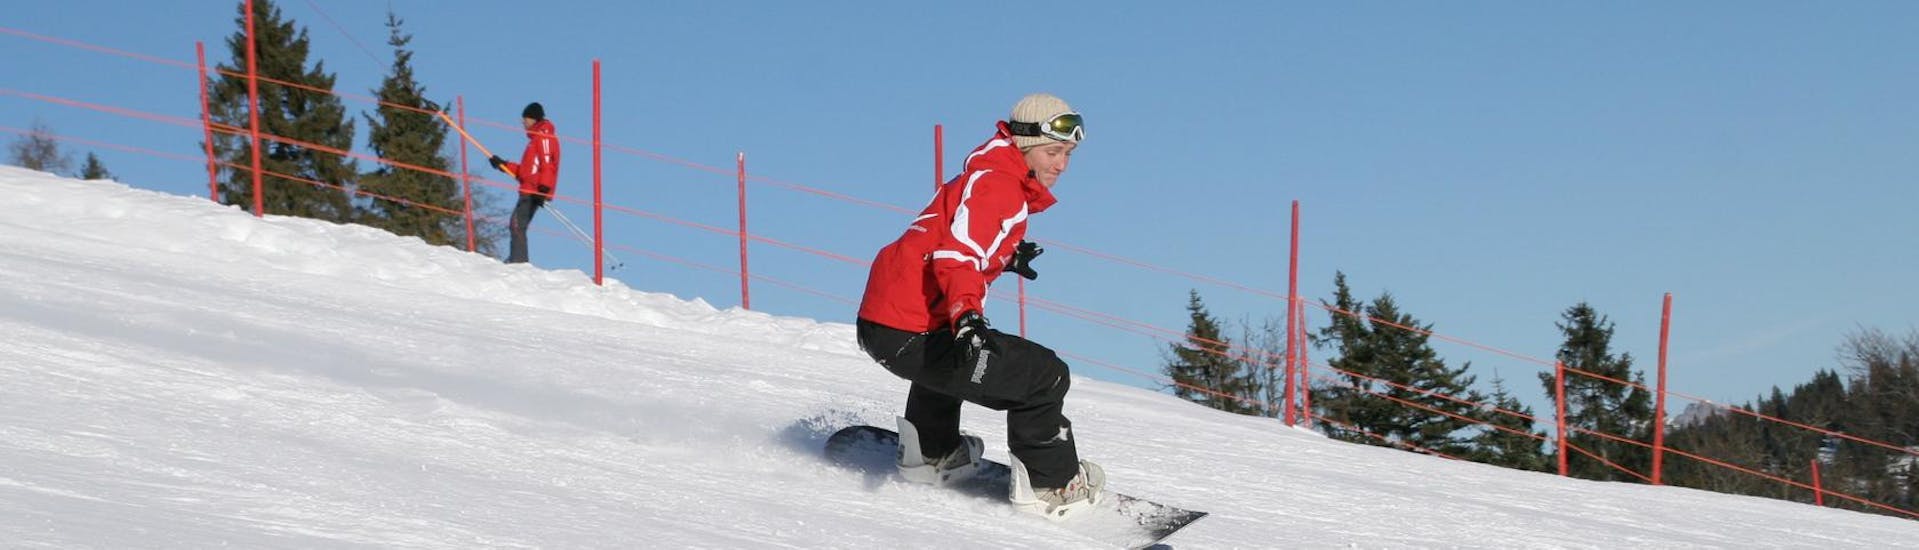 Un snowboarder dévale les pistes pendant ses cours particuliers de snowboard pour enfants et adultes de tous niveaux avec l'école de ski Busslehner.